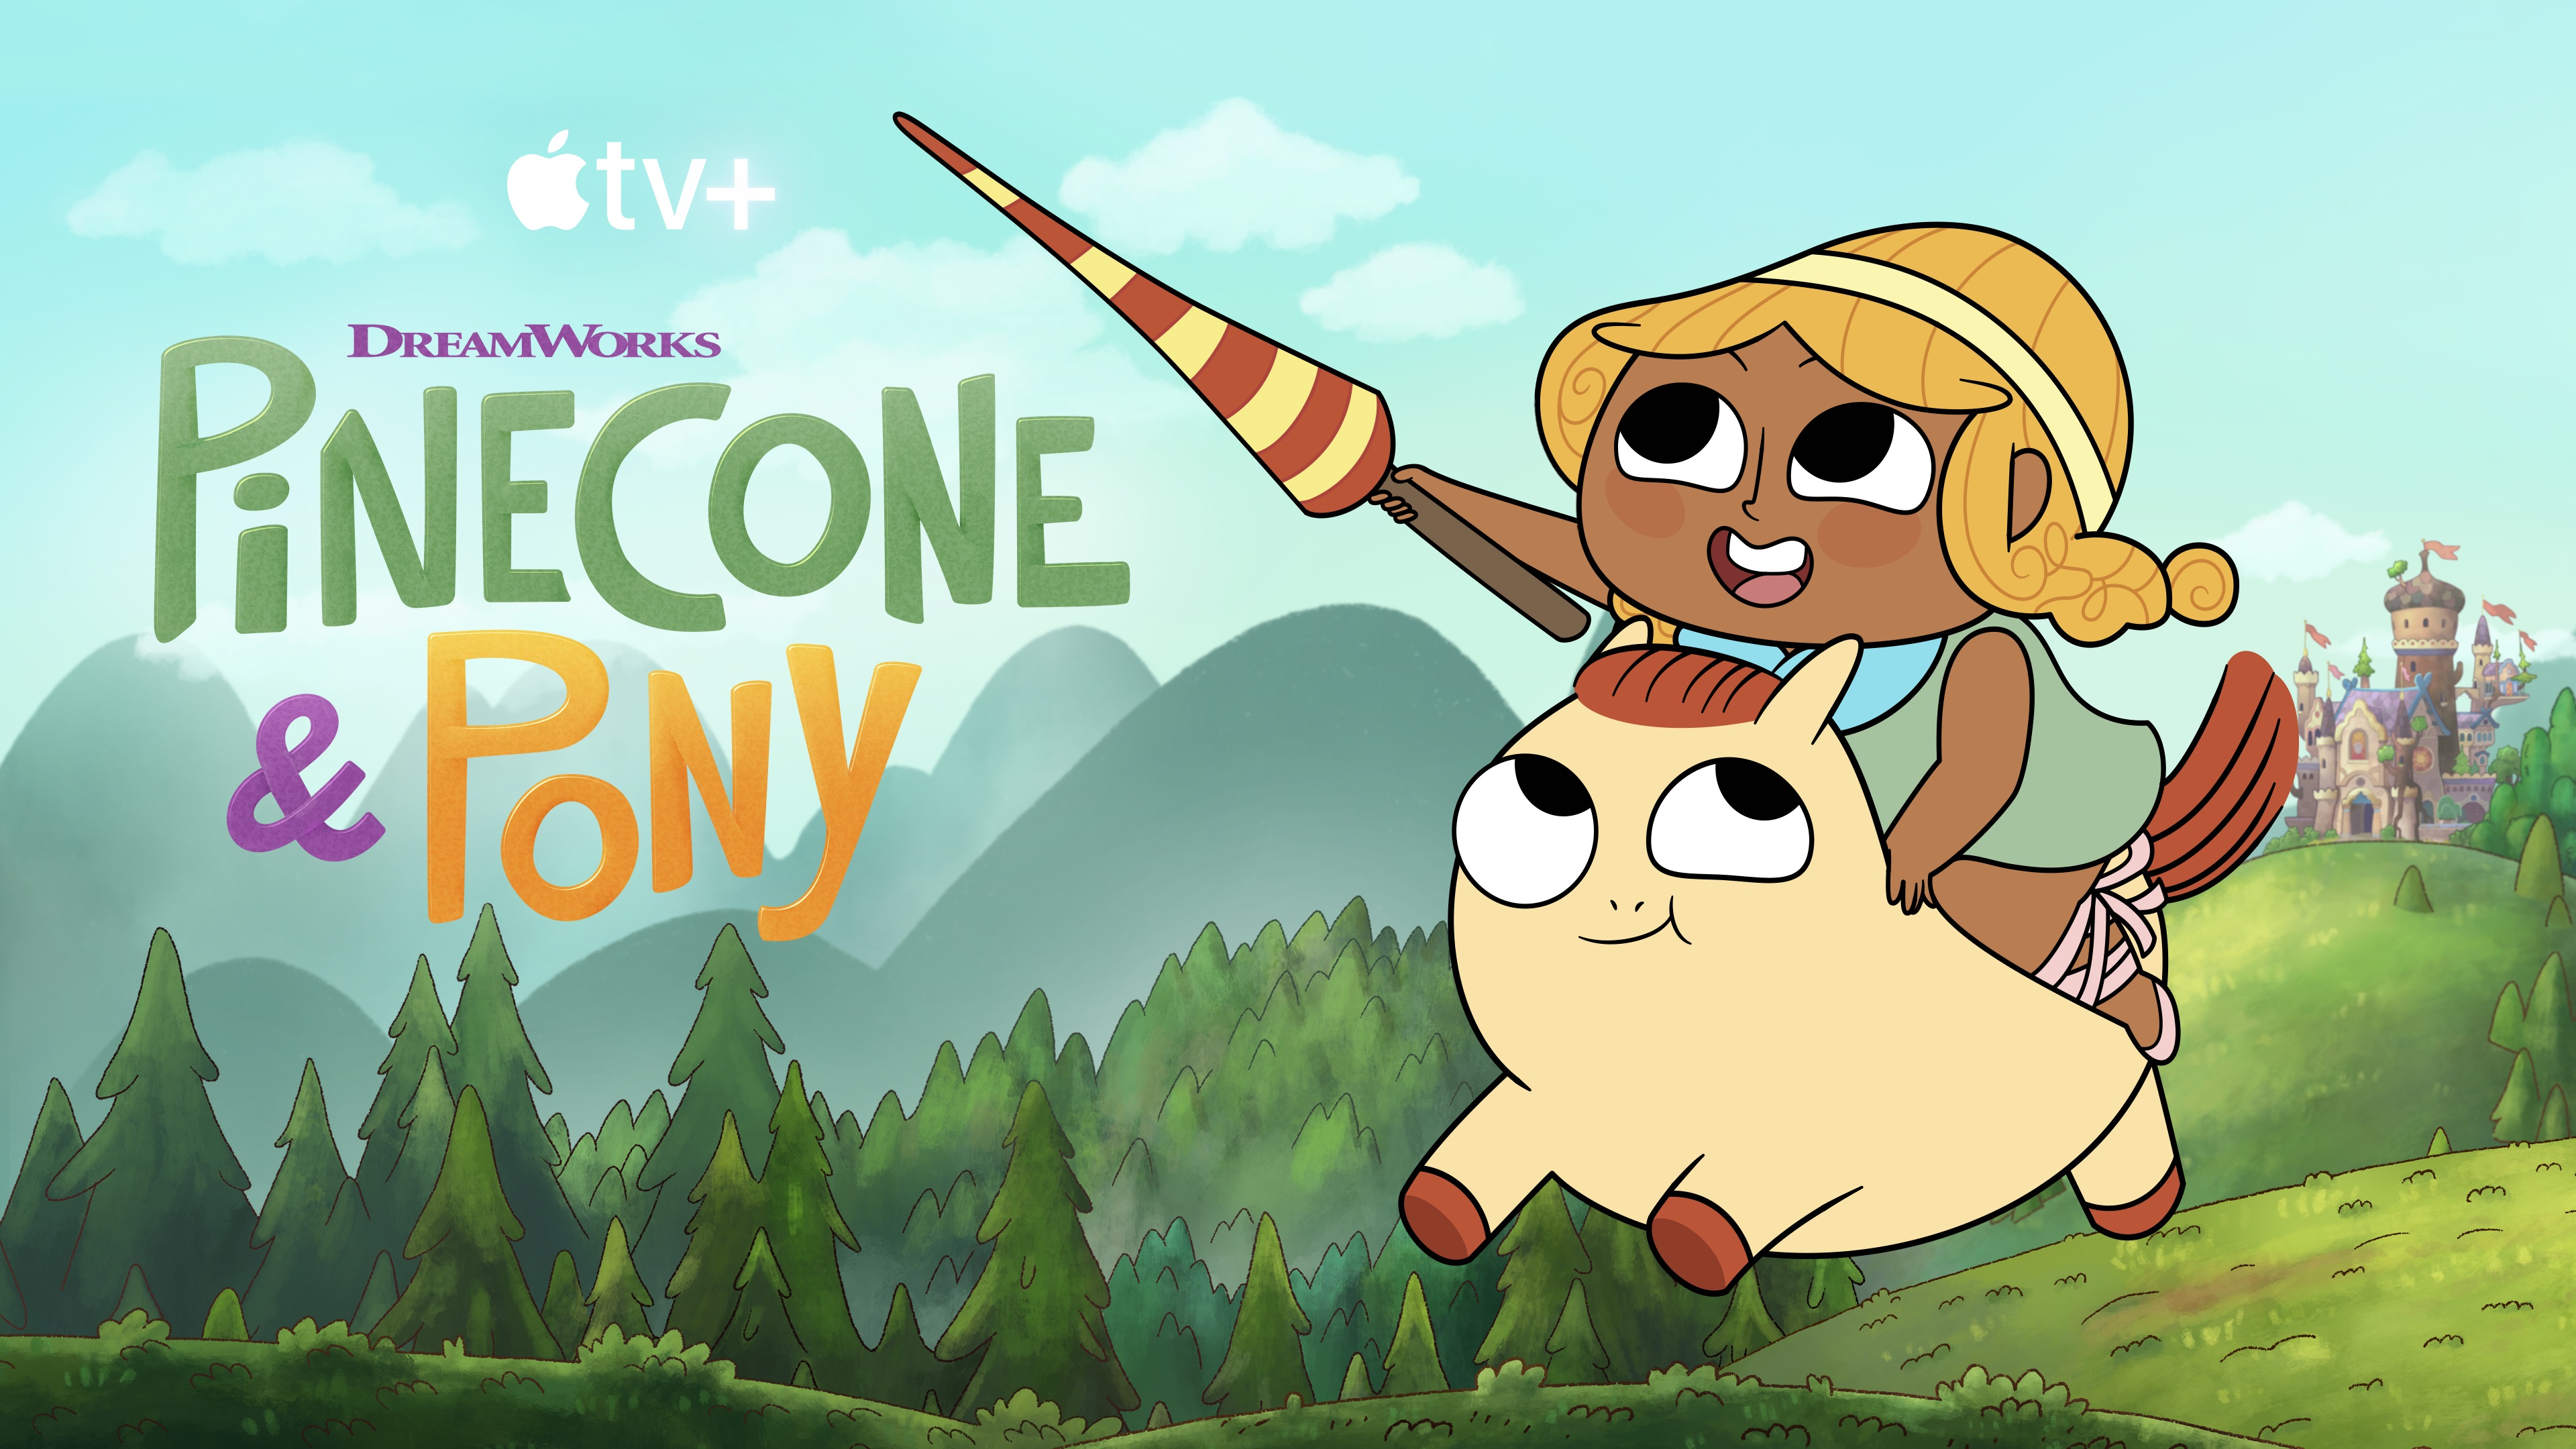 Pinecone & Pony on Apple TV+